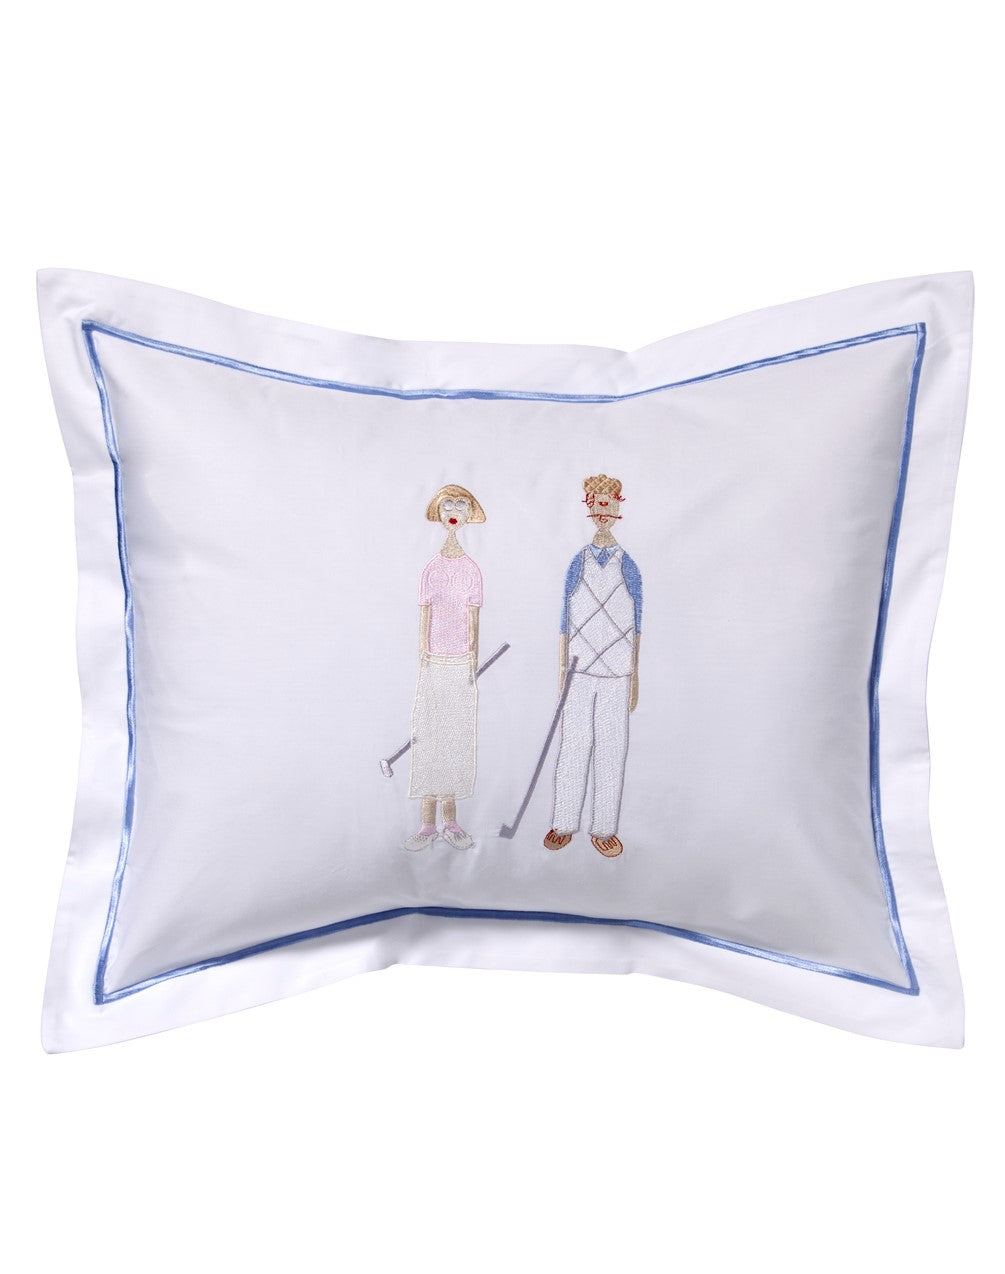 Boudoir Pillow Cover, Golf Couple